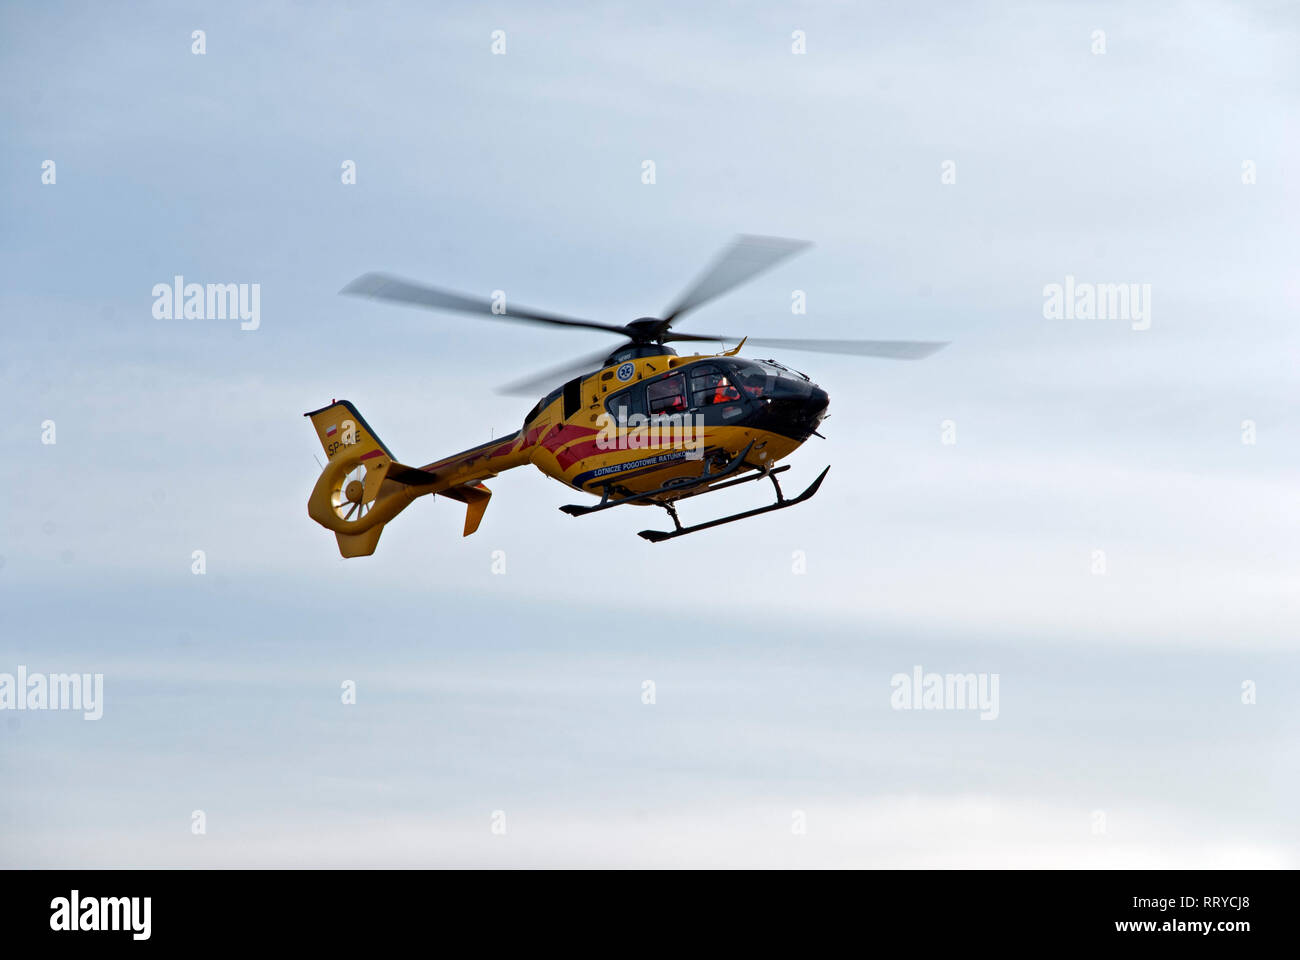 Elicottero del polacco Medical Air Rescue - Polacco Lotnicze Pogotowie Ratunkowe. L'elicottero si avvicina all'atterraggio. Foto Stock